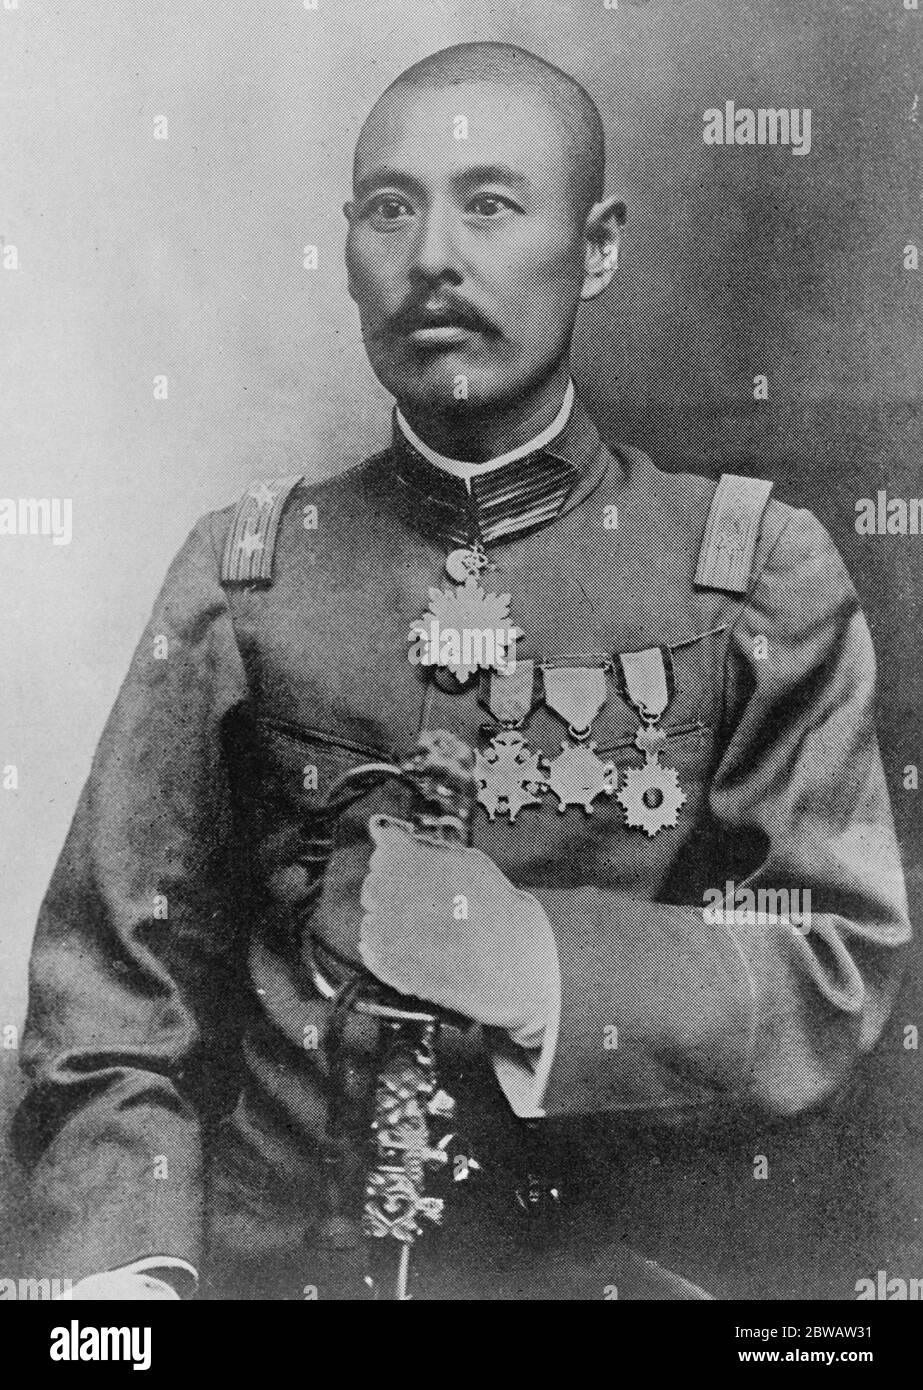 Oberster im chinesischen Bürgerkrieg . General Wu Pei Fu, der in seinem Wettbewerb um die Vorherrschaft im chinesischen Bürgerkrieg triumphiert hat. 27 Juni 1922 Stockfoto